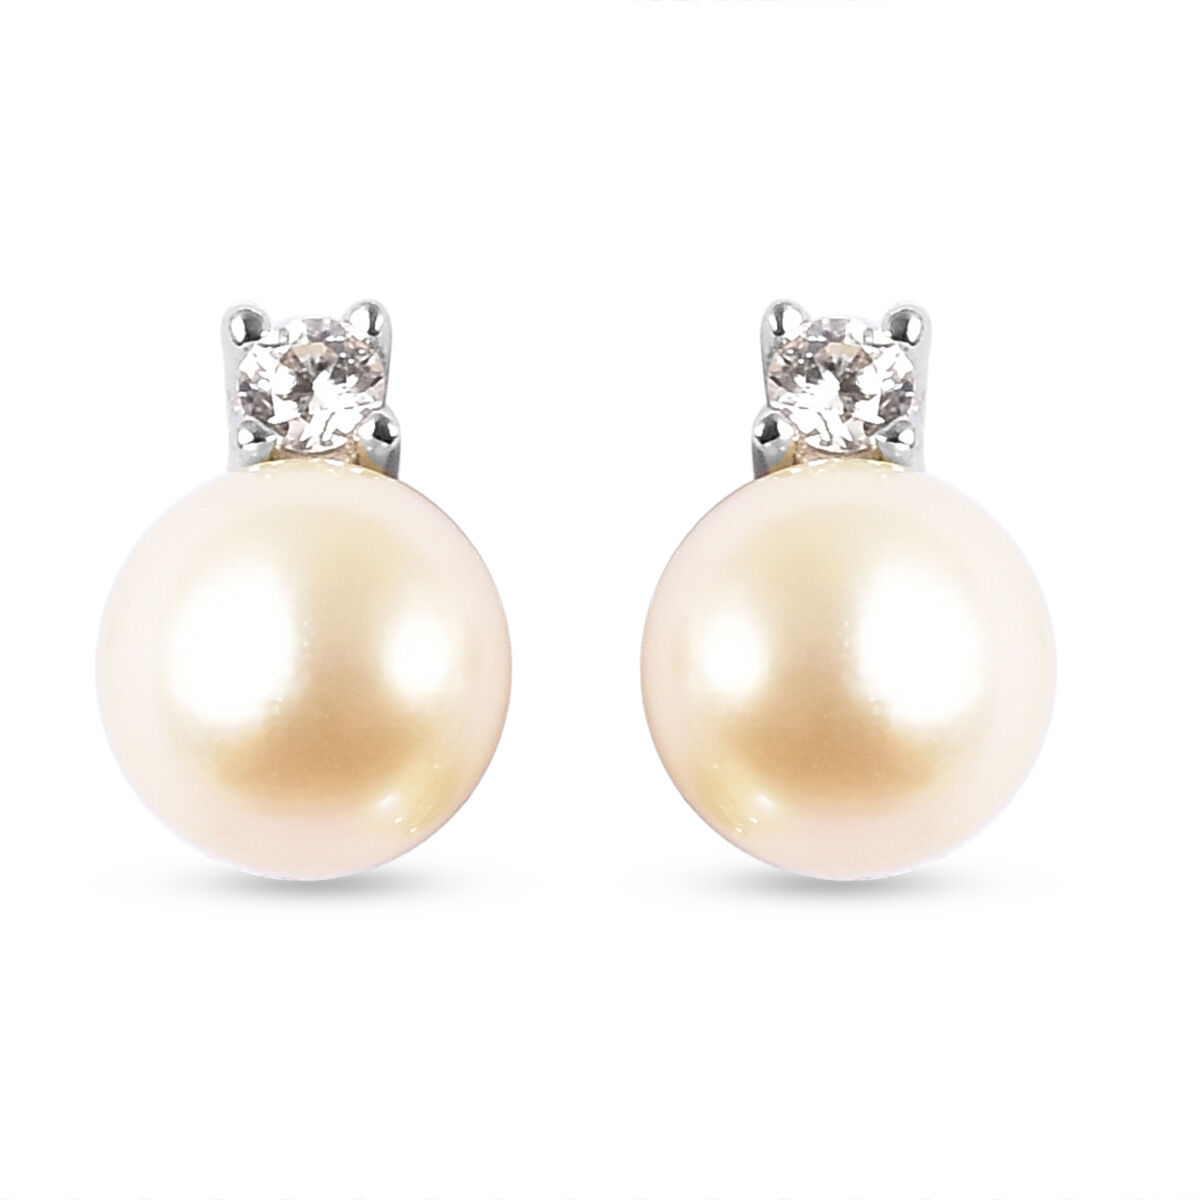 BIG-DEAL_ Fashion Stud Earrings Push Back Natural Freshwater Pearl Earrings Jewelry Stud Earrings for Women